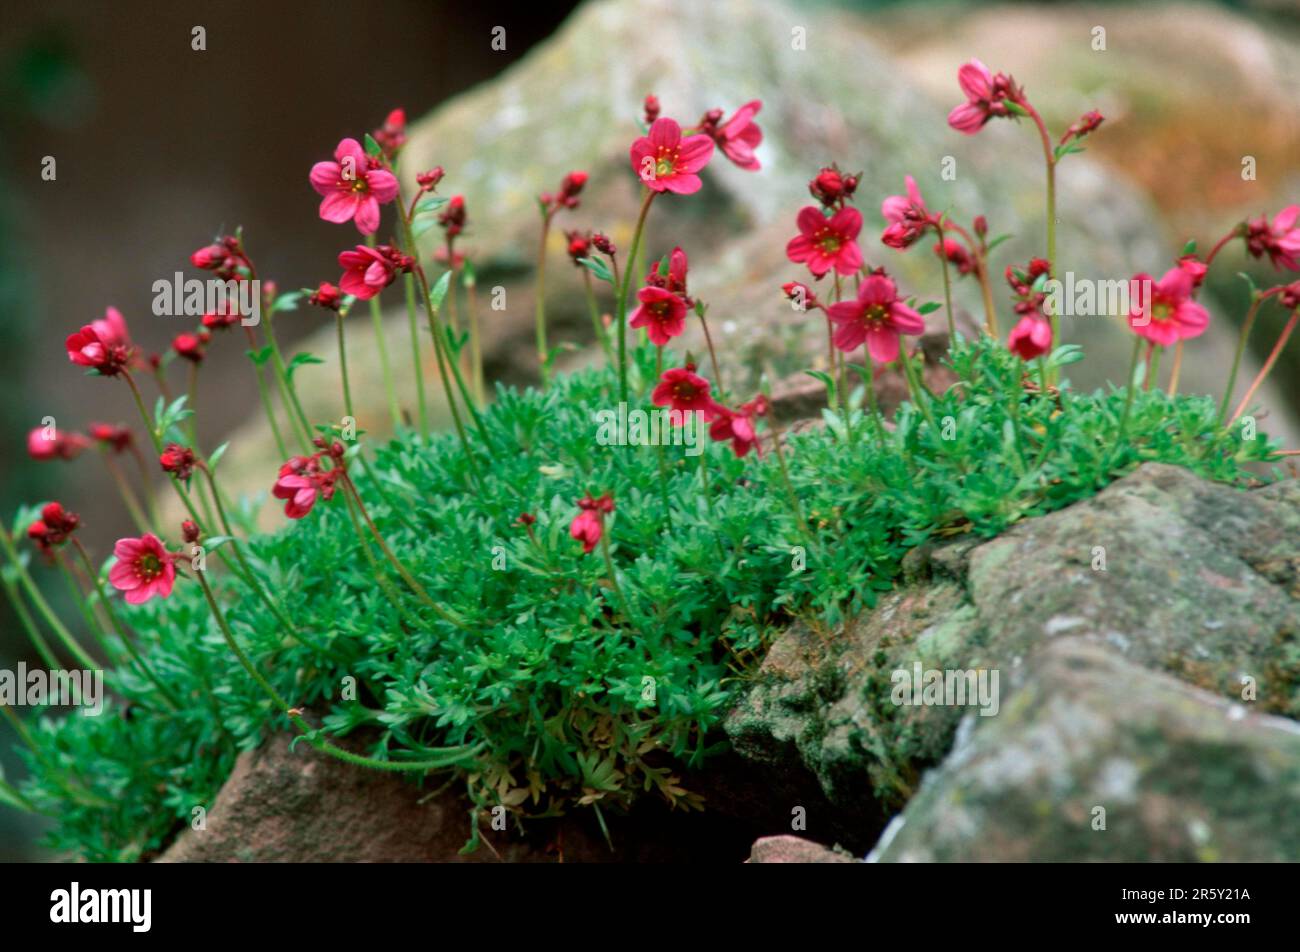 Saxifrage (Saxifraga arendsii) Stock Photo